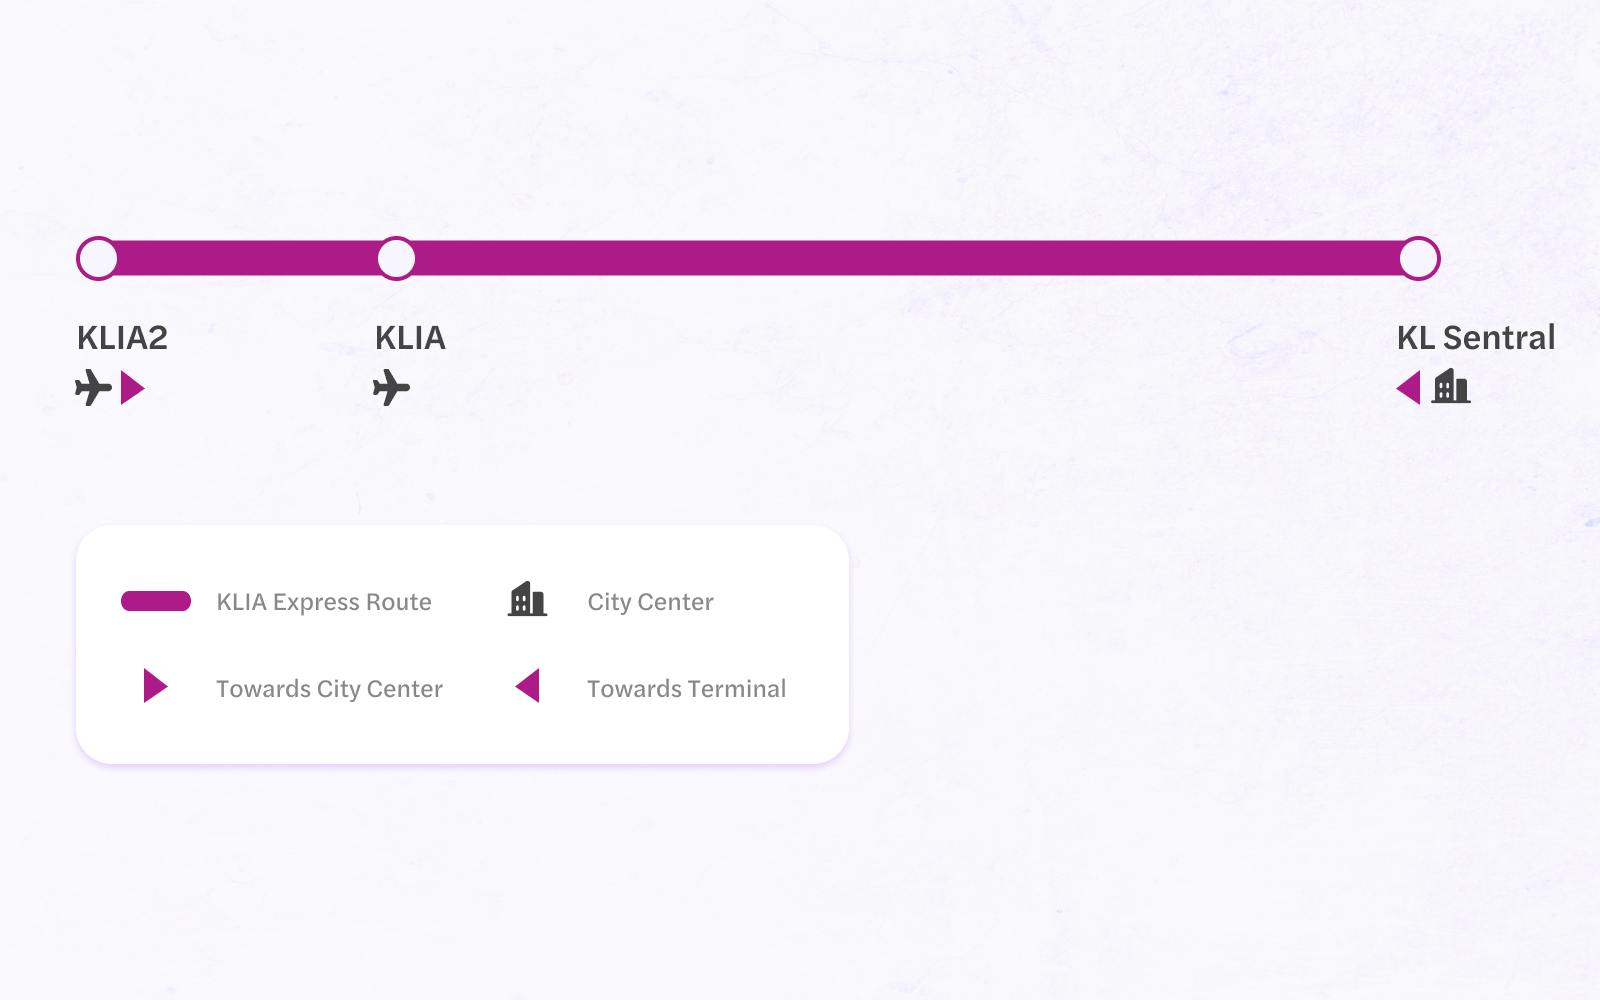 KLIA Express Route